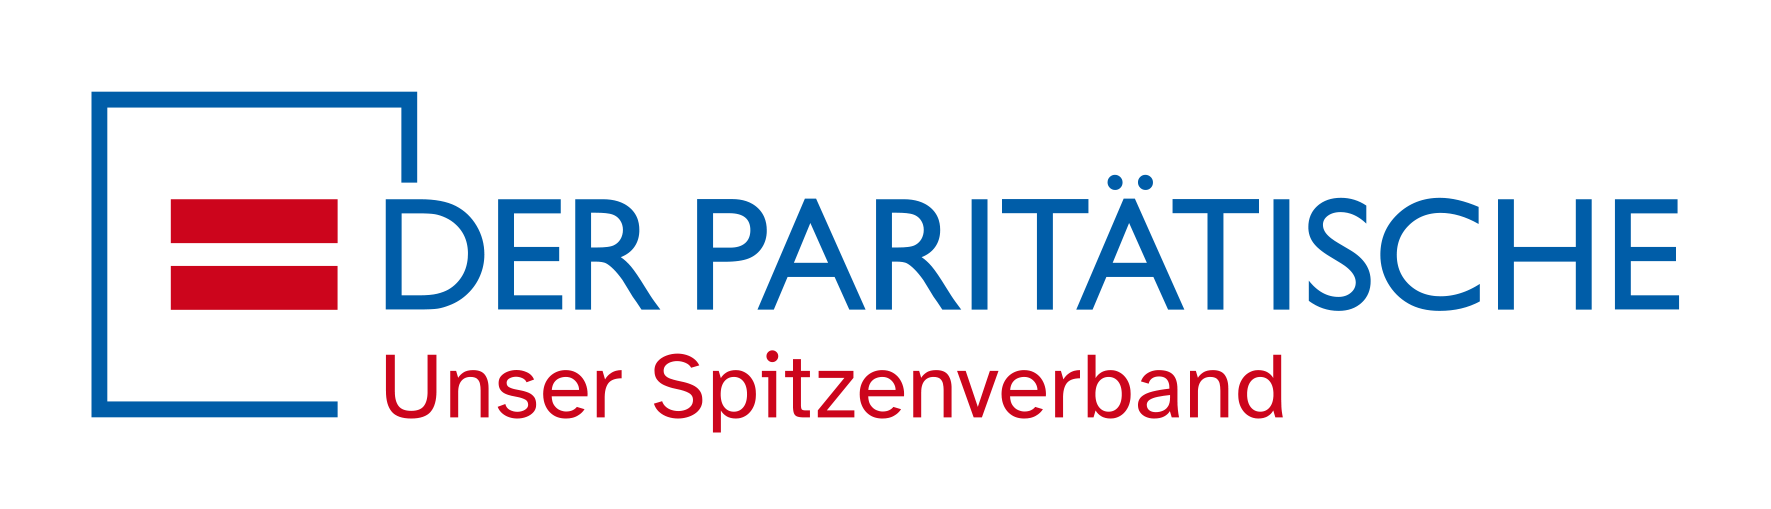 Logo Paritätischer Wohlfahrtsverband